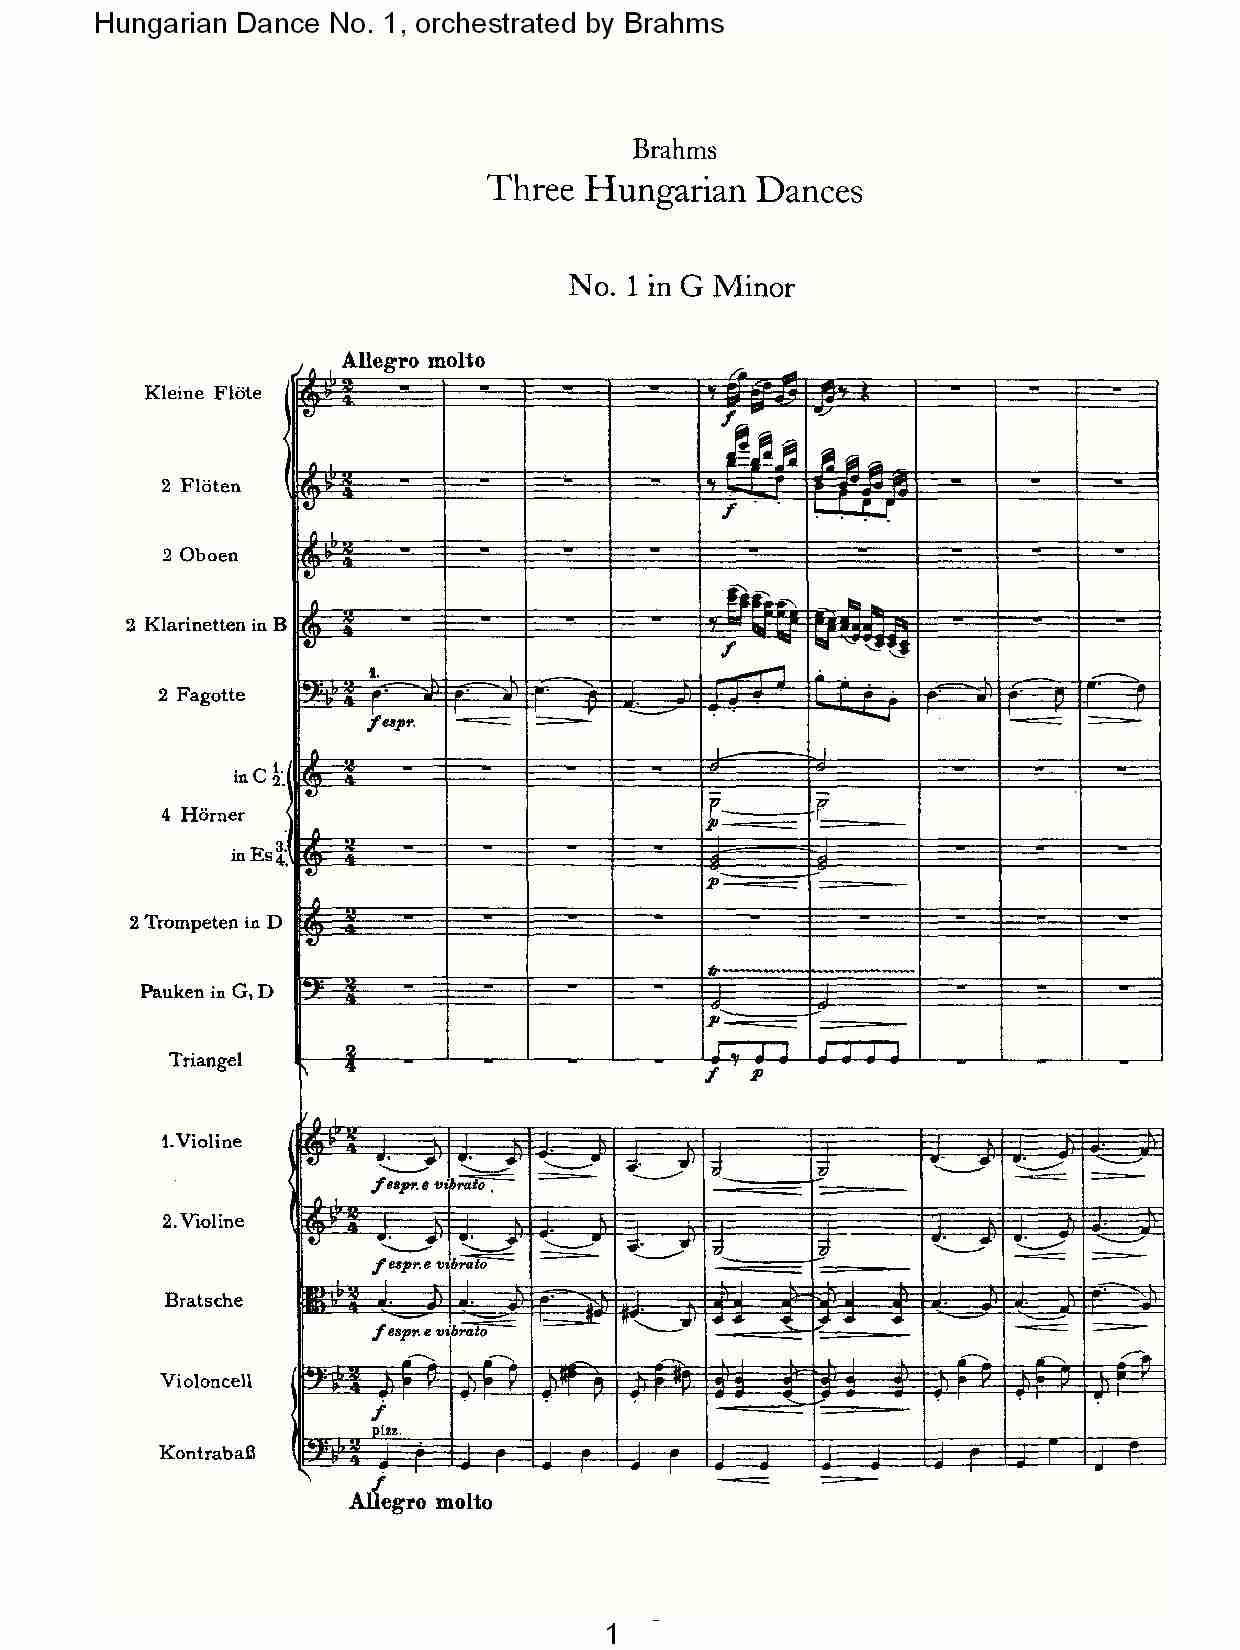 第一匈牙利舞曲 勃拉姆斯管弦乐曲式（一）